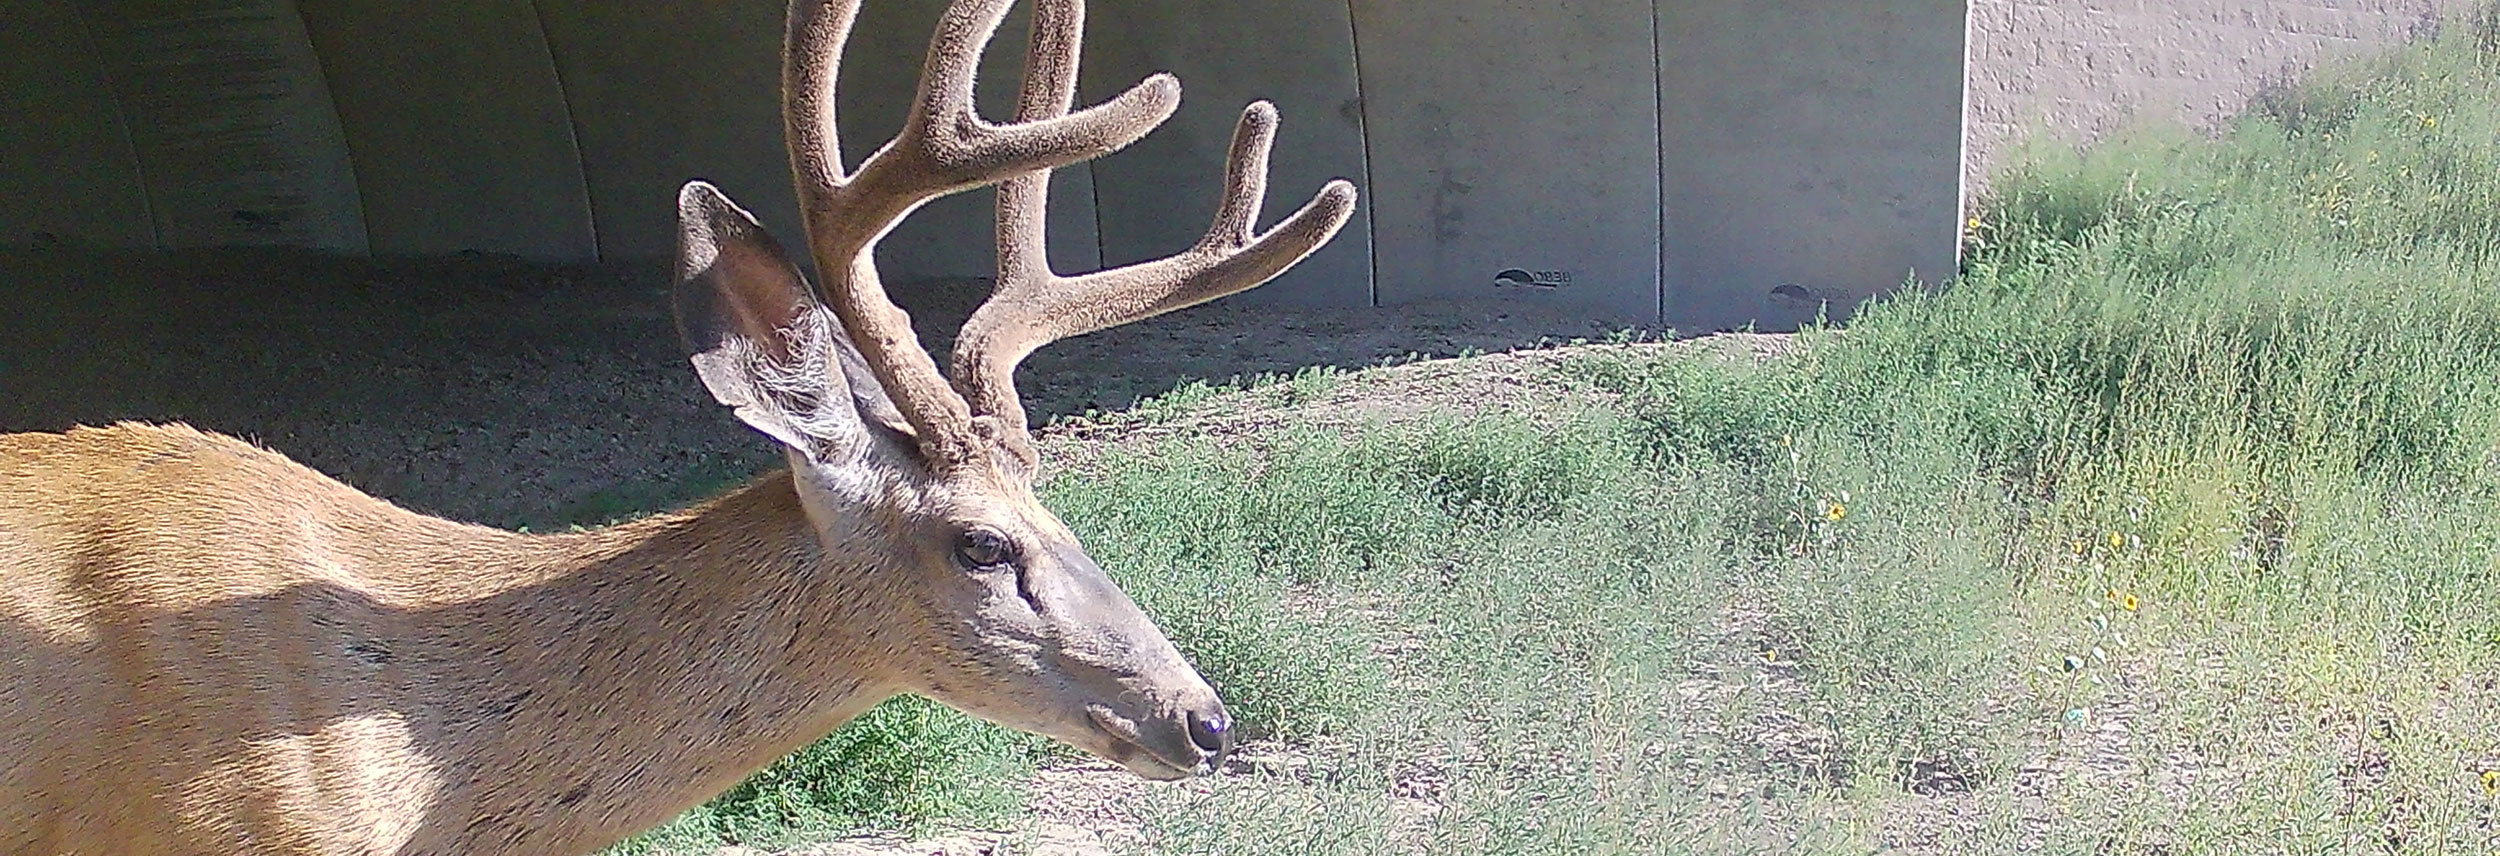 Mule deer buck in velvet using wildife crossing